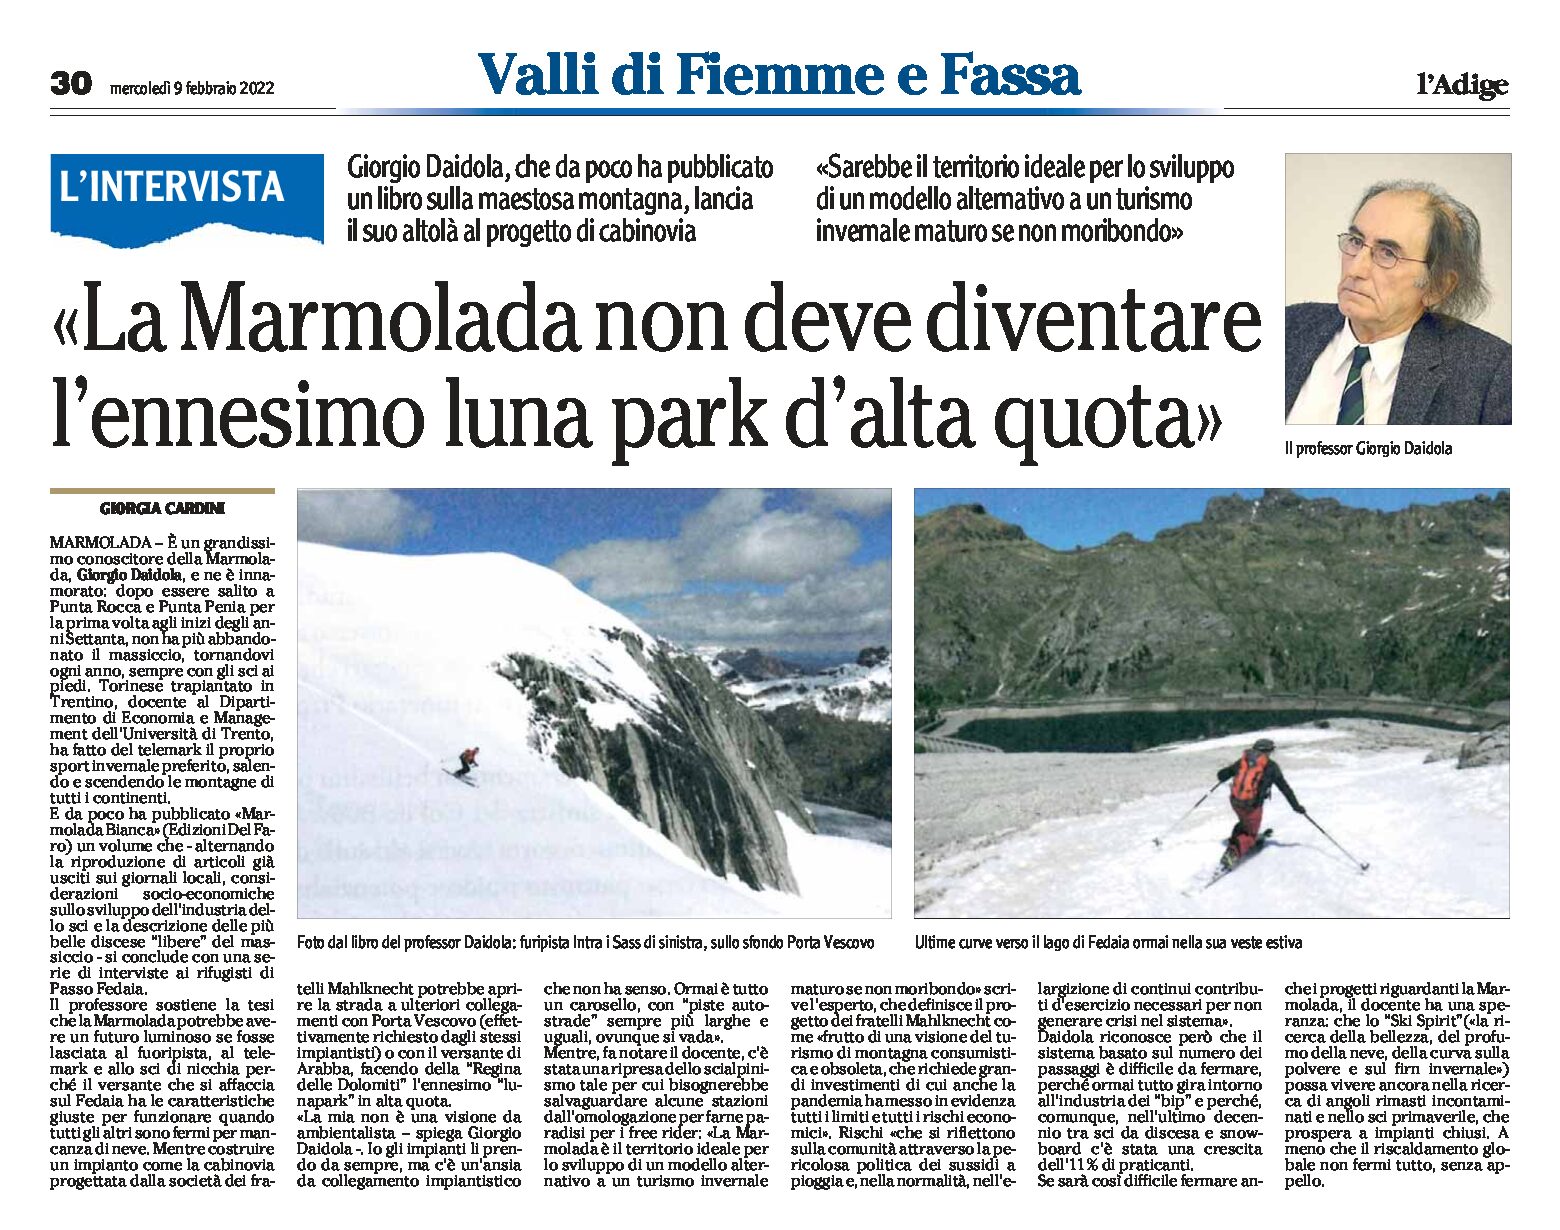 Marmolada: non deve diventare l’ennesimo luna park d’alta quota. Intervista al prof Daidola dell’Università di Trento